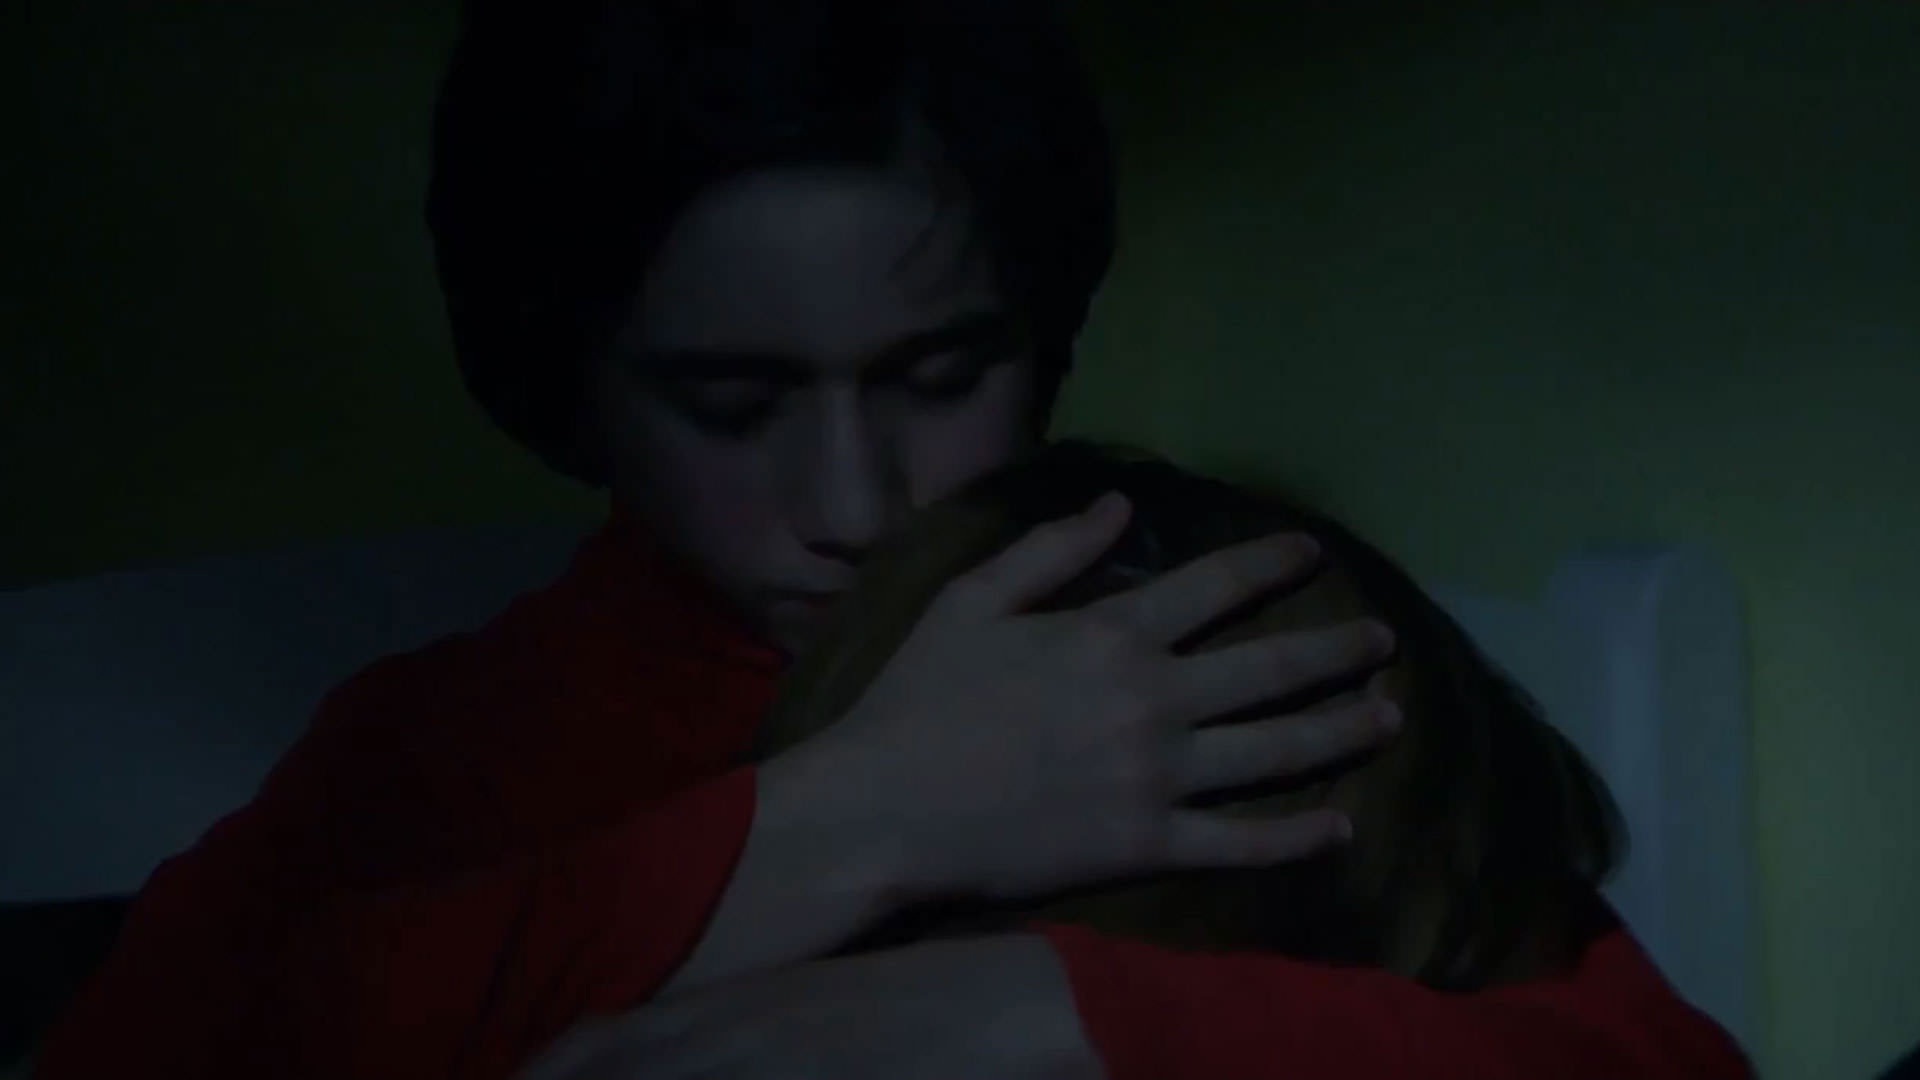 ساندرا هولر در آغوش میلو ماچادو گرانر قرمزپوش در نمایی از فیلم آناتومی یک سقوط به کارگردانی ژوستین تریه